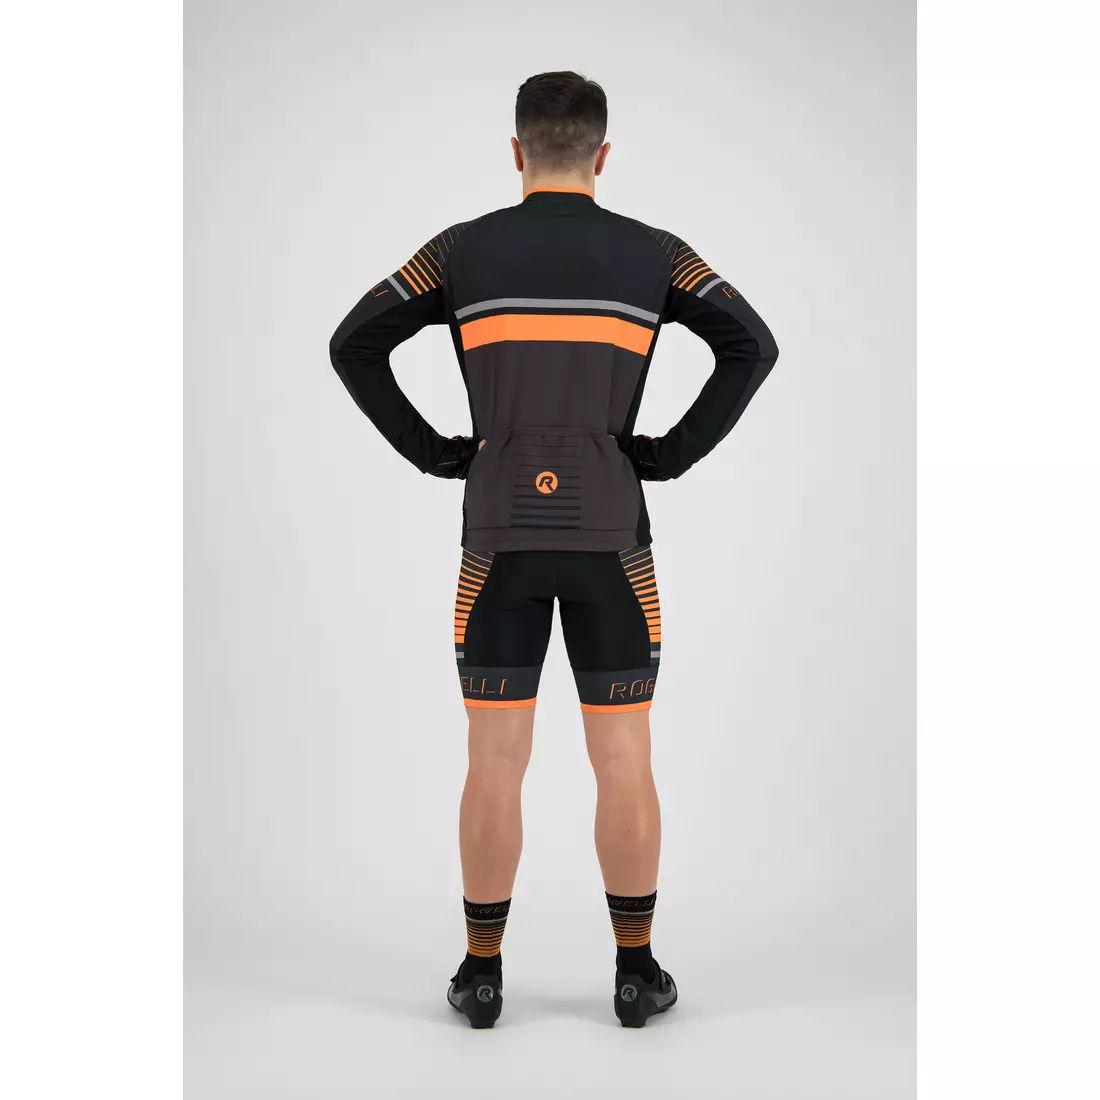 Rogelli HERO 001.268 pánsky cyklistický dres sivý / čierny / oranžový